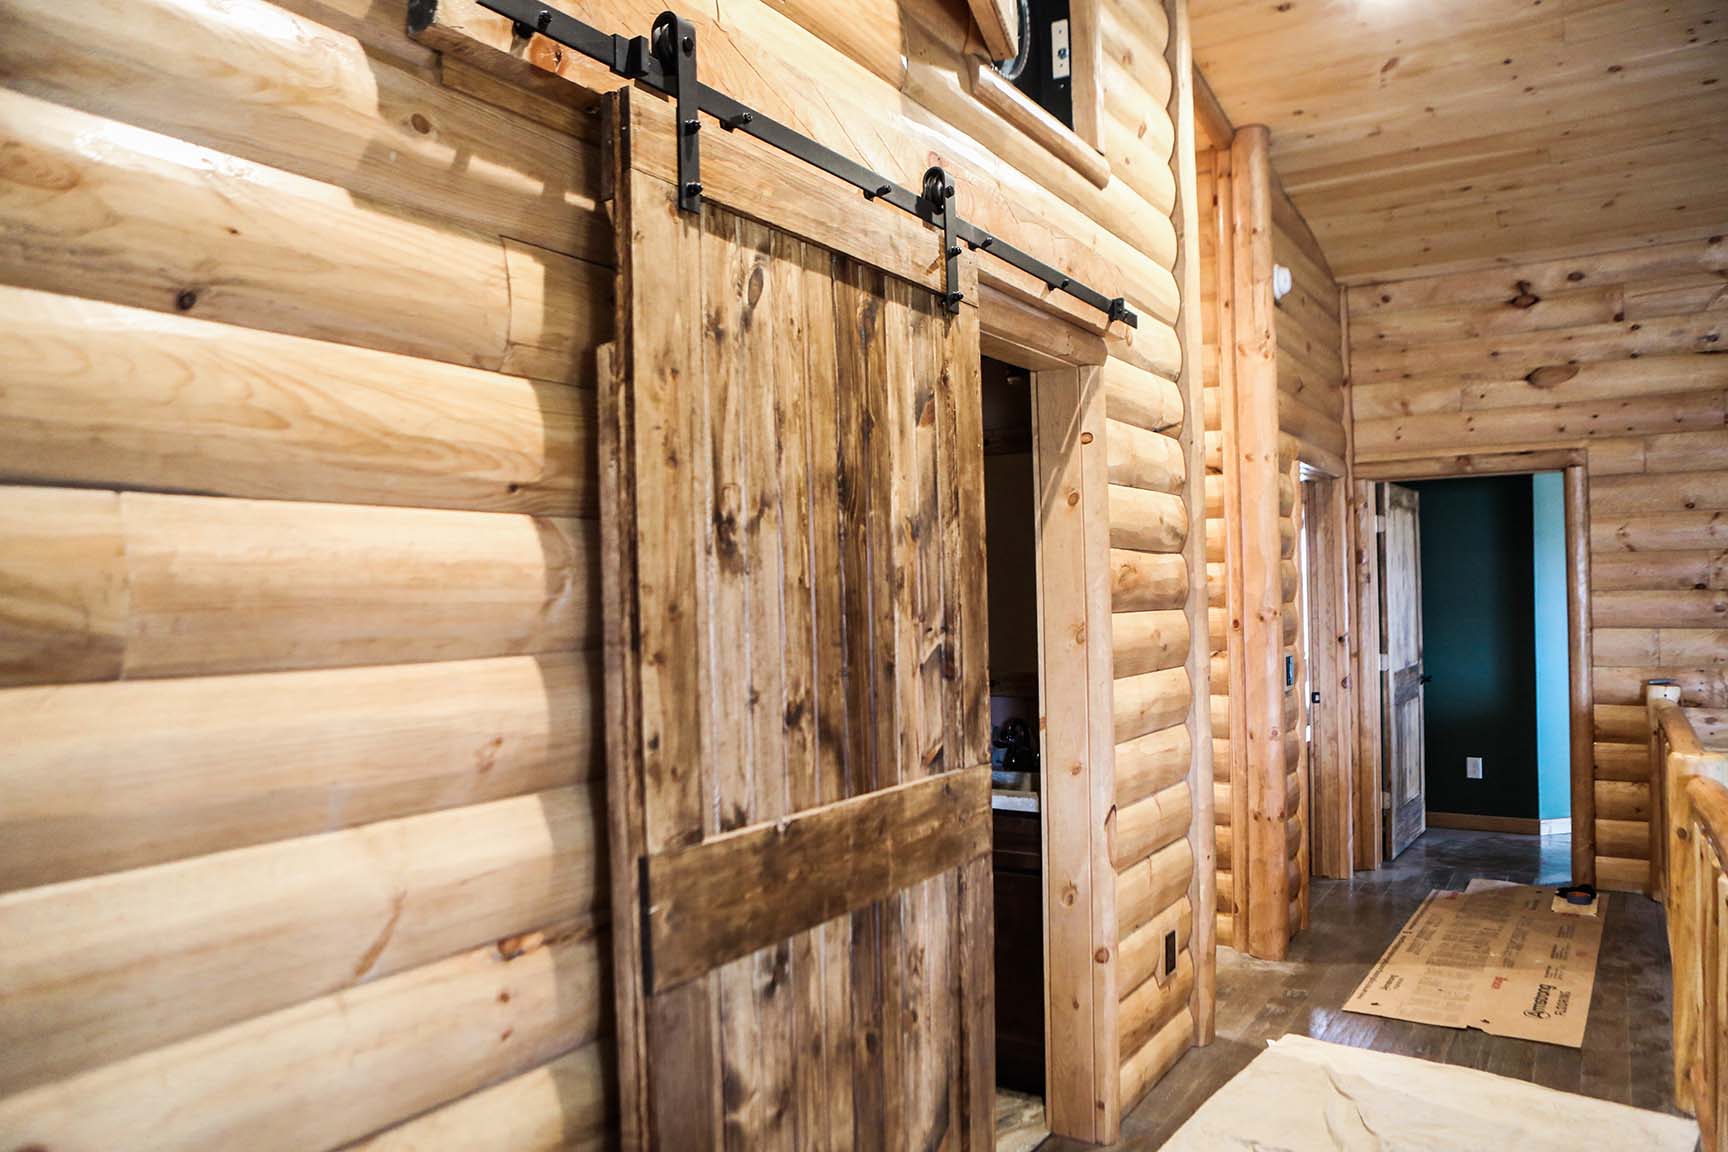 Knotty pine rustic burnt barn wood door. With custom barn door hardware, size 4-0.